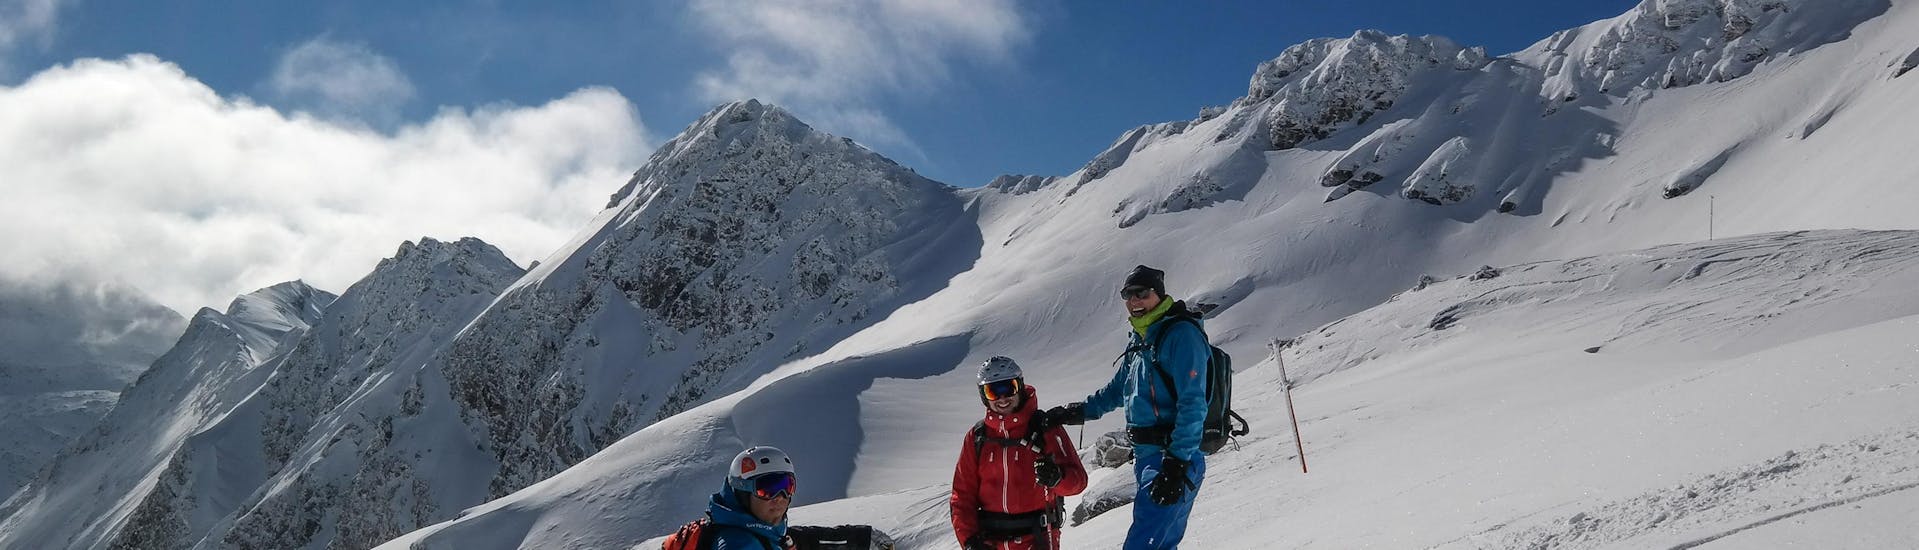 Clases de esquí de travesía privadas para todos los niveles con Ski School Snowsports Gastein.